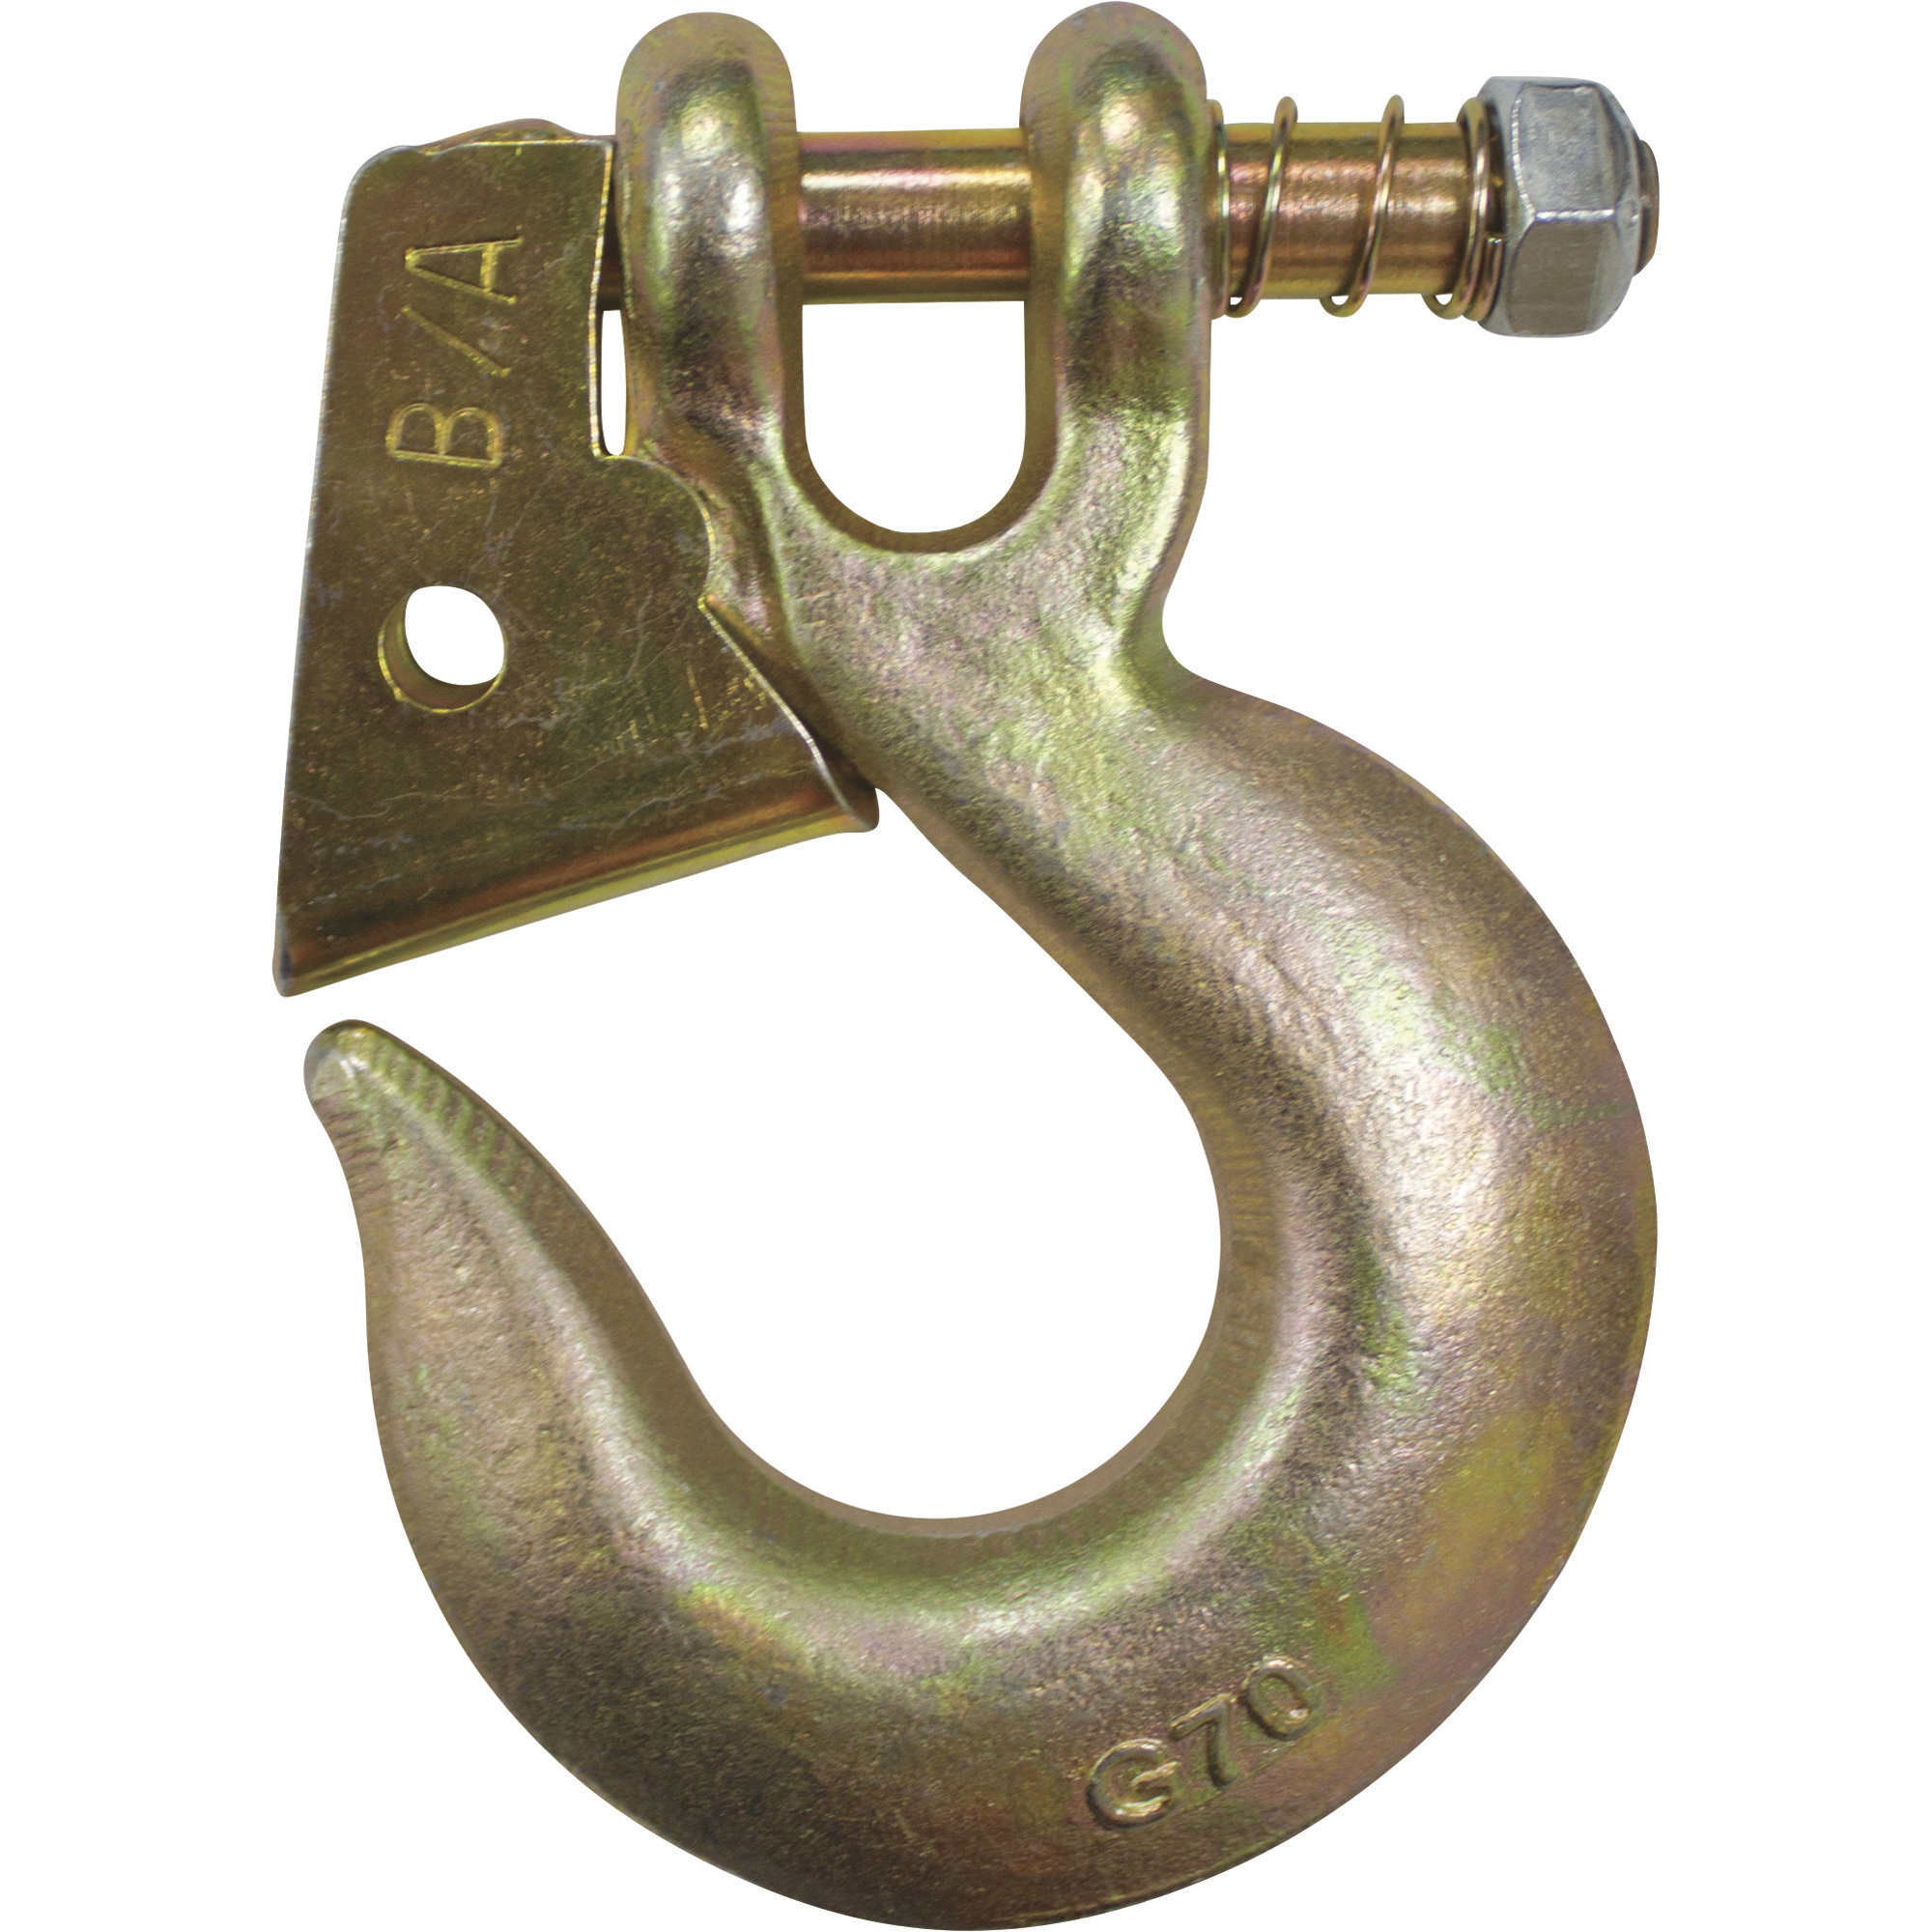 B/A Products Twist Lock Clevis Slip Hook â 3/8Inch, 5.5Inch L, 6,600-Lb. Capacity, Model G7-205-38